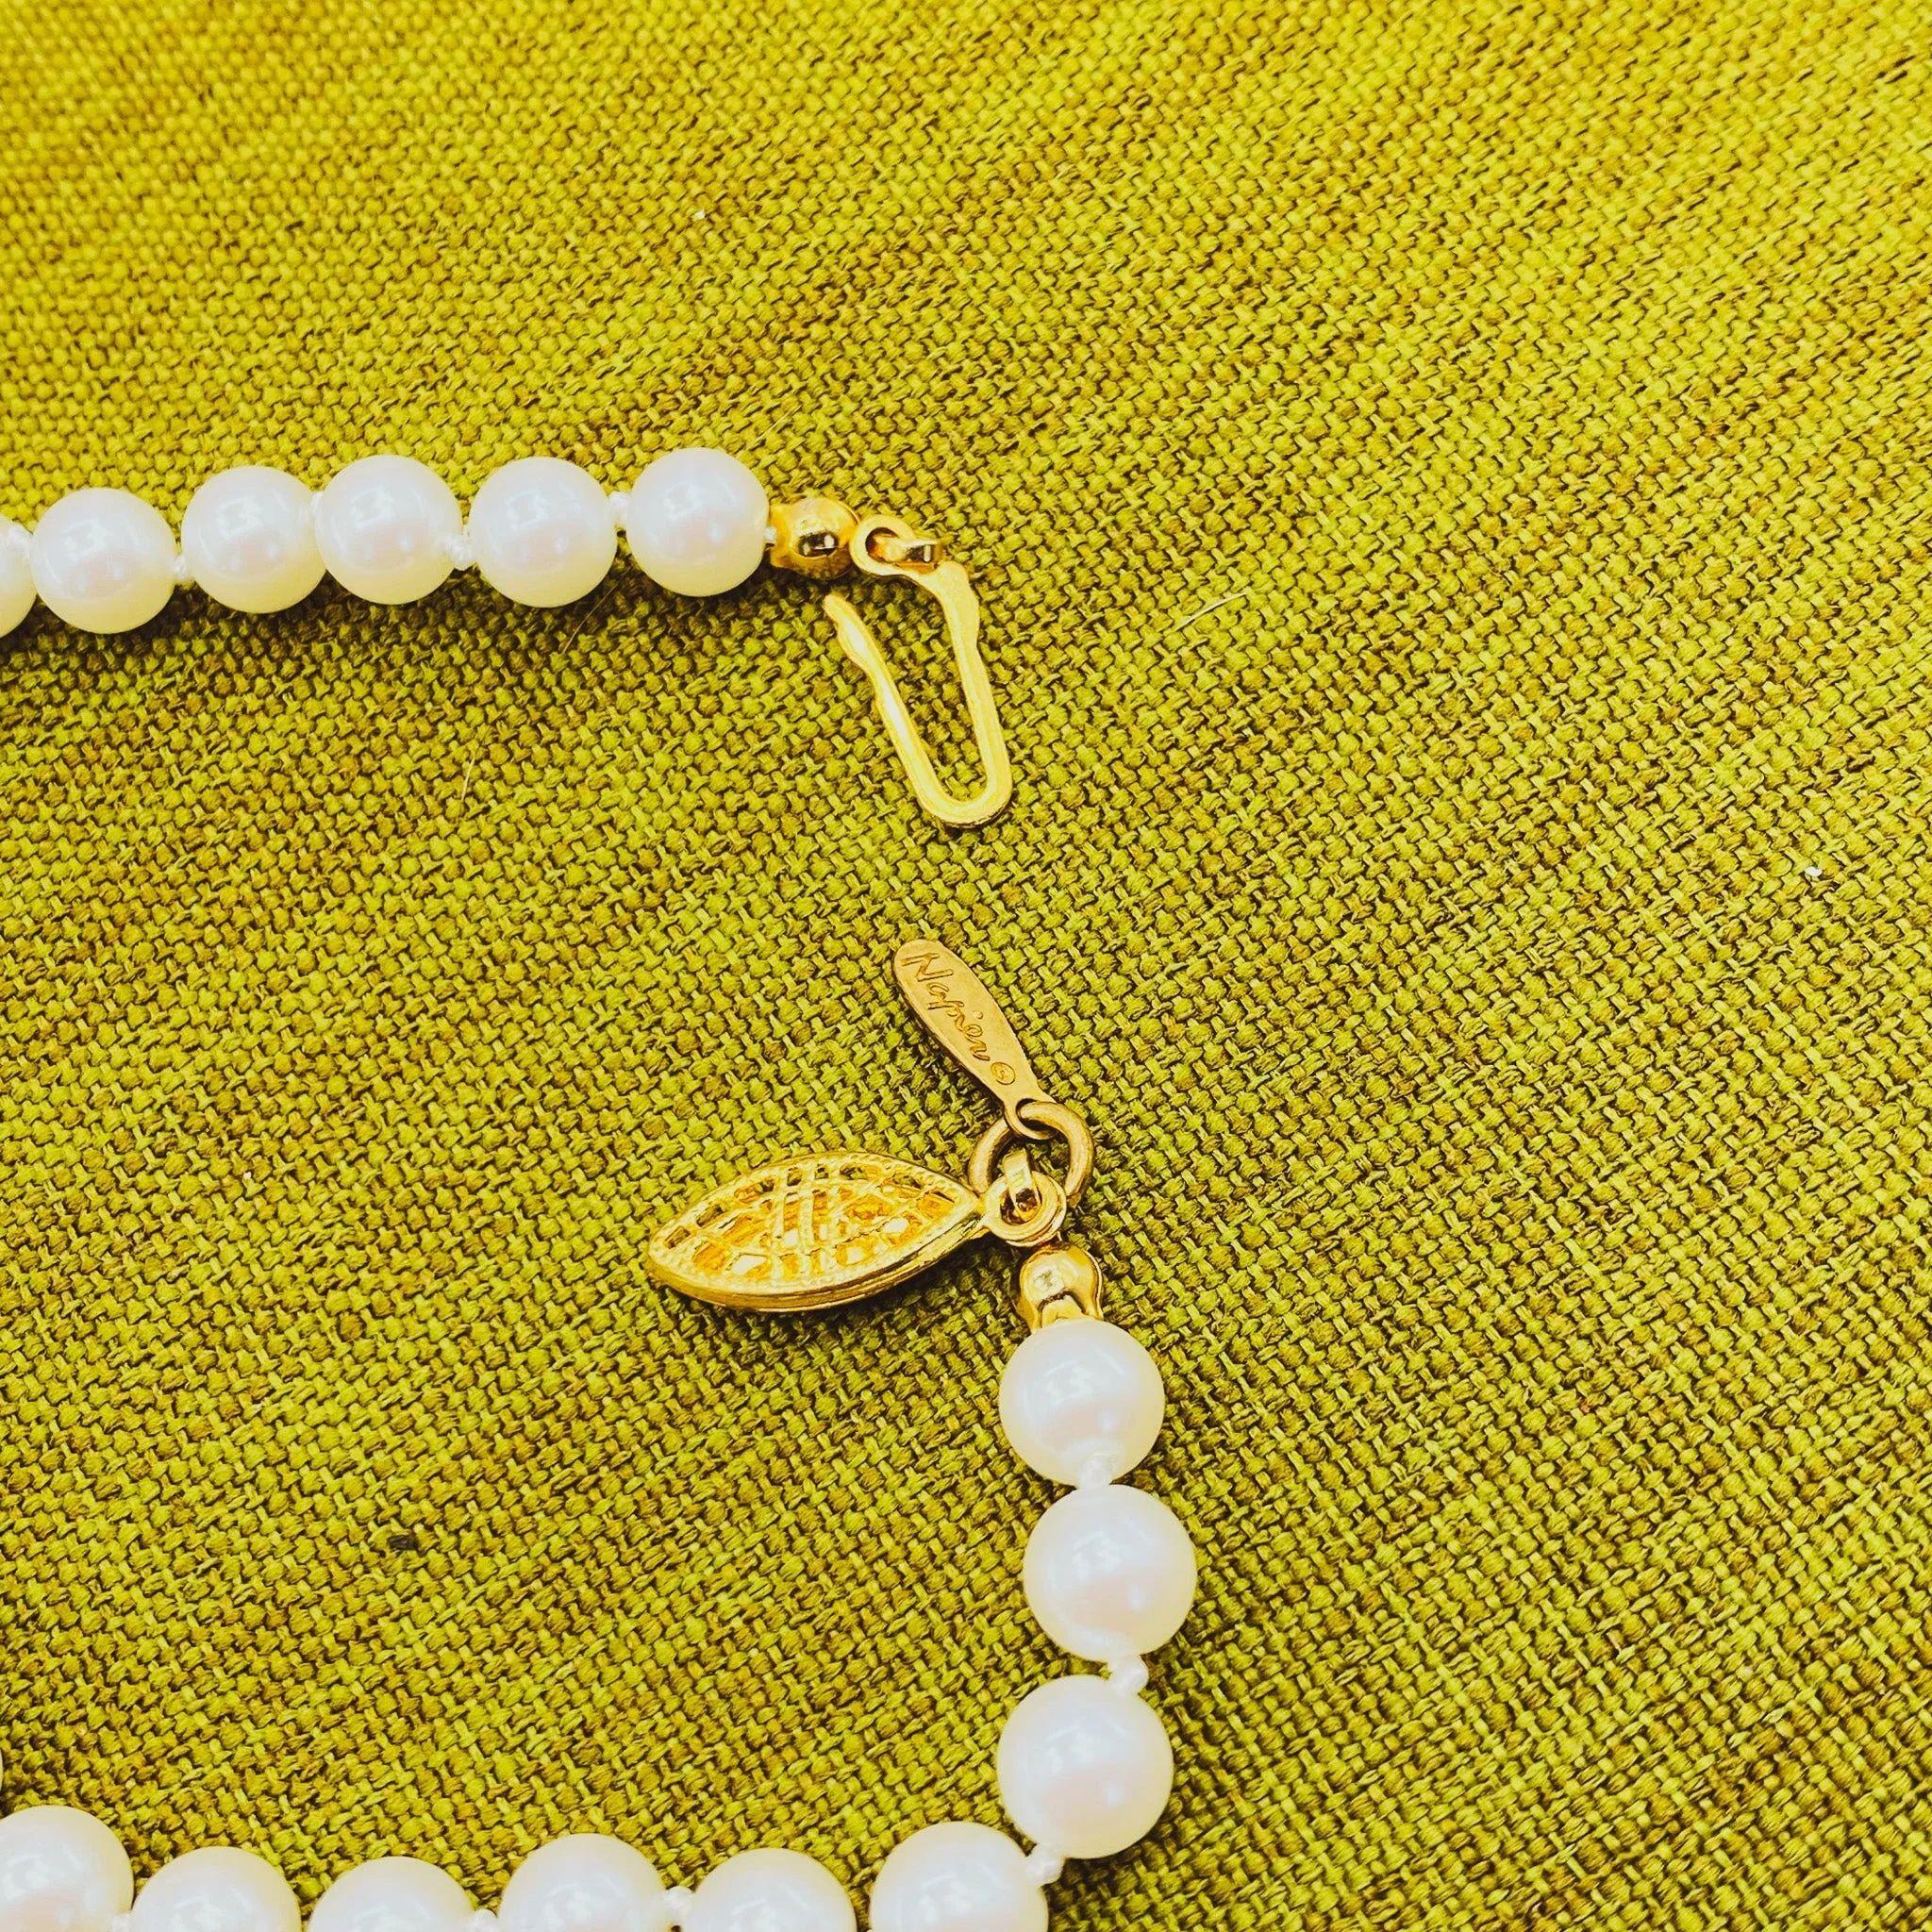 Napier Vintage Faux Perlenkette 1980er Jahre

Diese Napier Vintage-Kunstperlenkette aus den 1980er Jahren ist ein Muss für jede Vintage-Schmuck-Sammlung. Diese schlichte, aber elegante Halskette ist eine großartige Ergänzung für jedes Outfit und